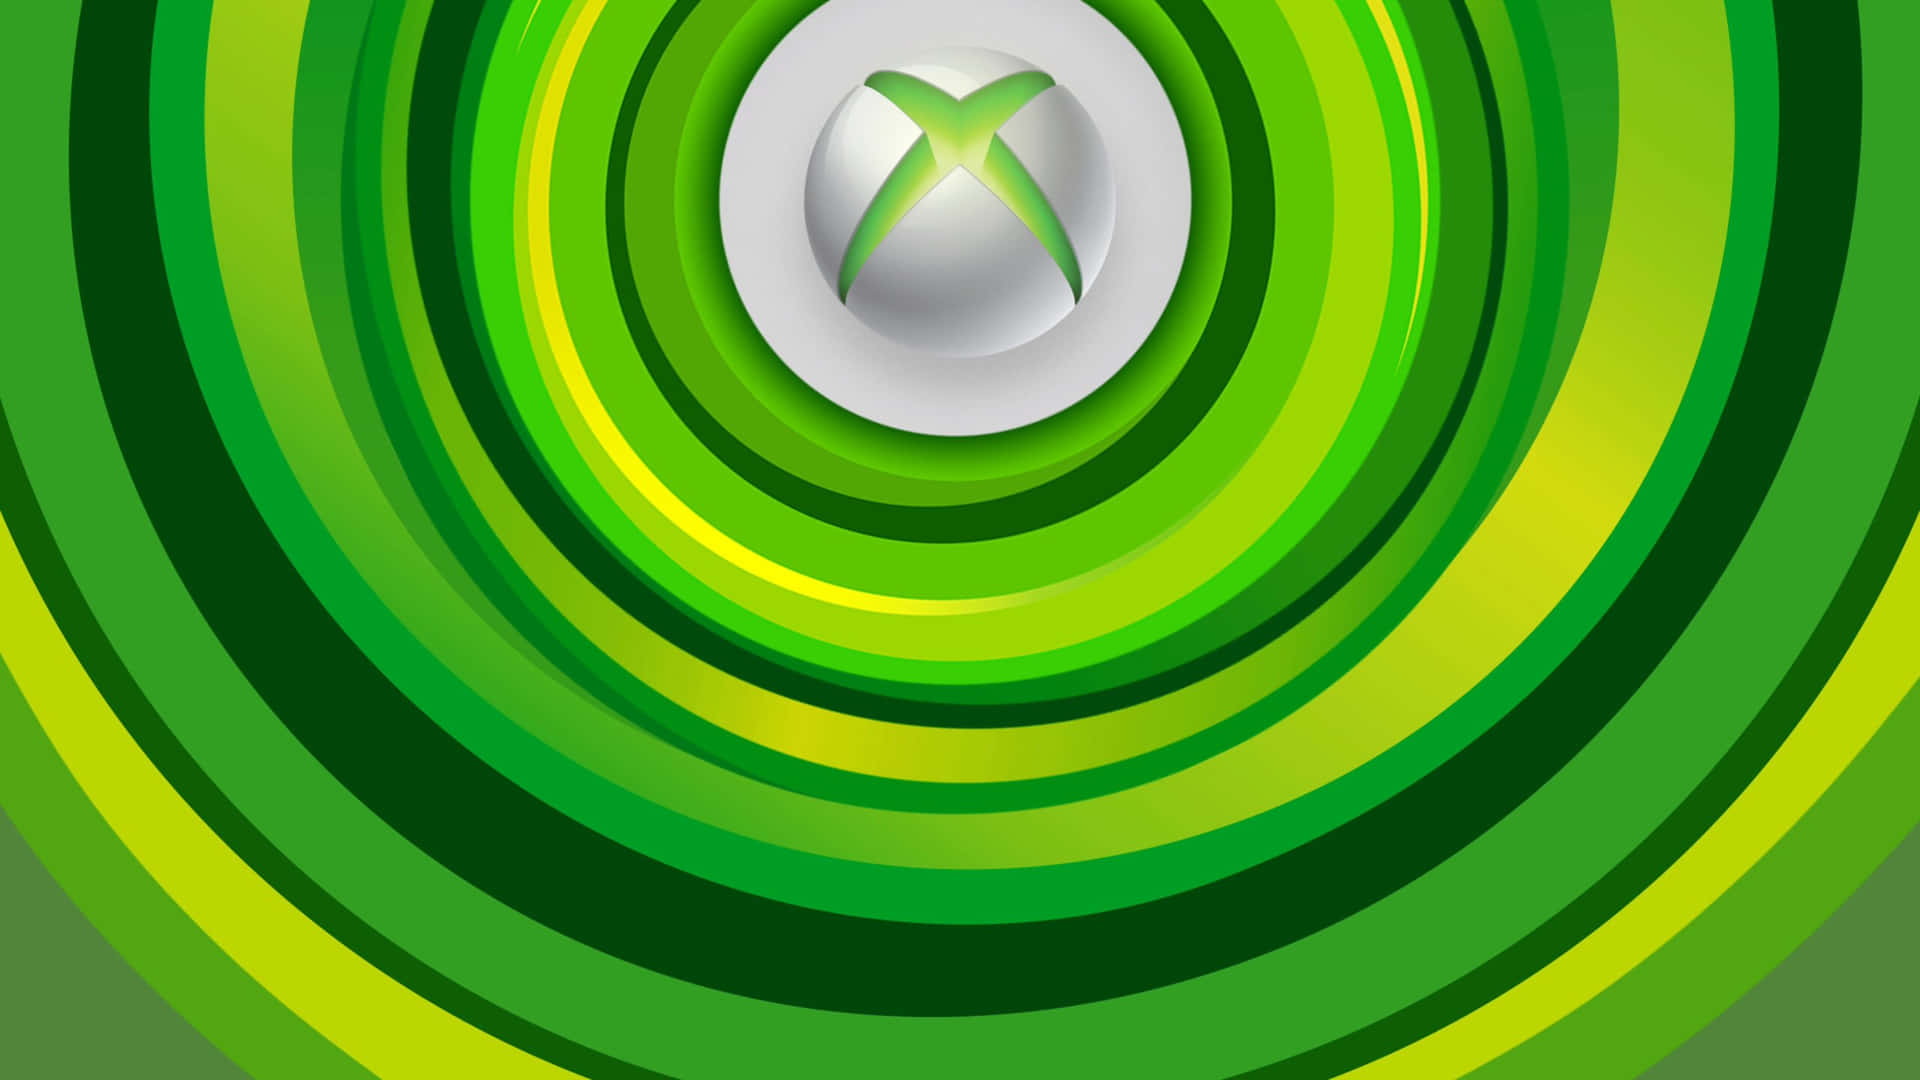 Xboxlive Hintergrundbilder - Xbox Live Hintergrundbilder